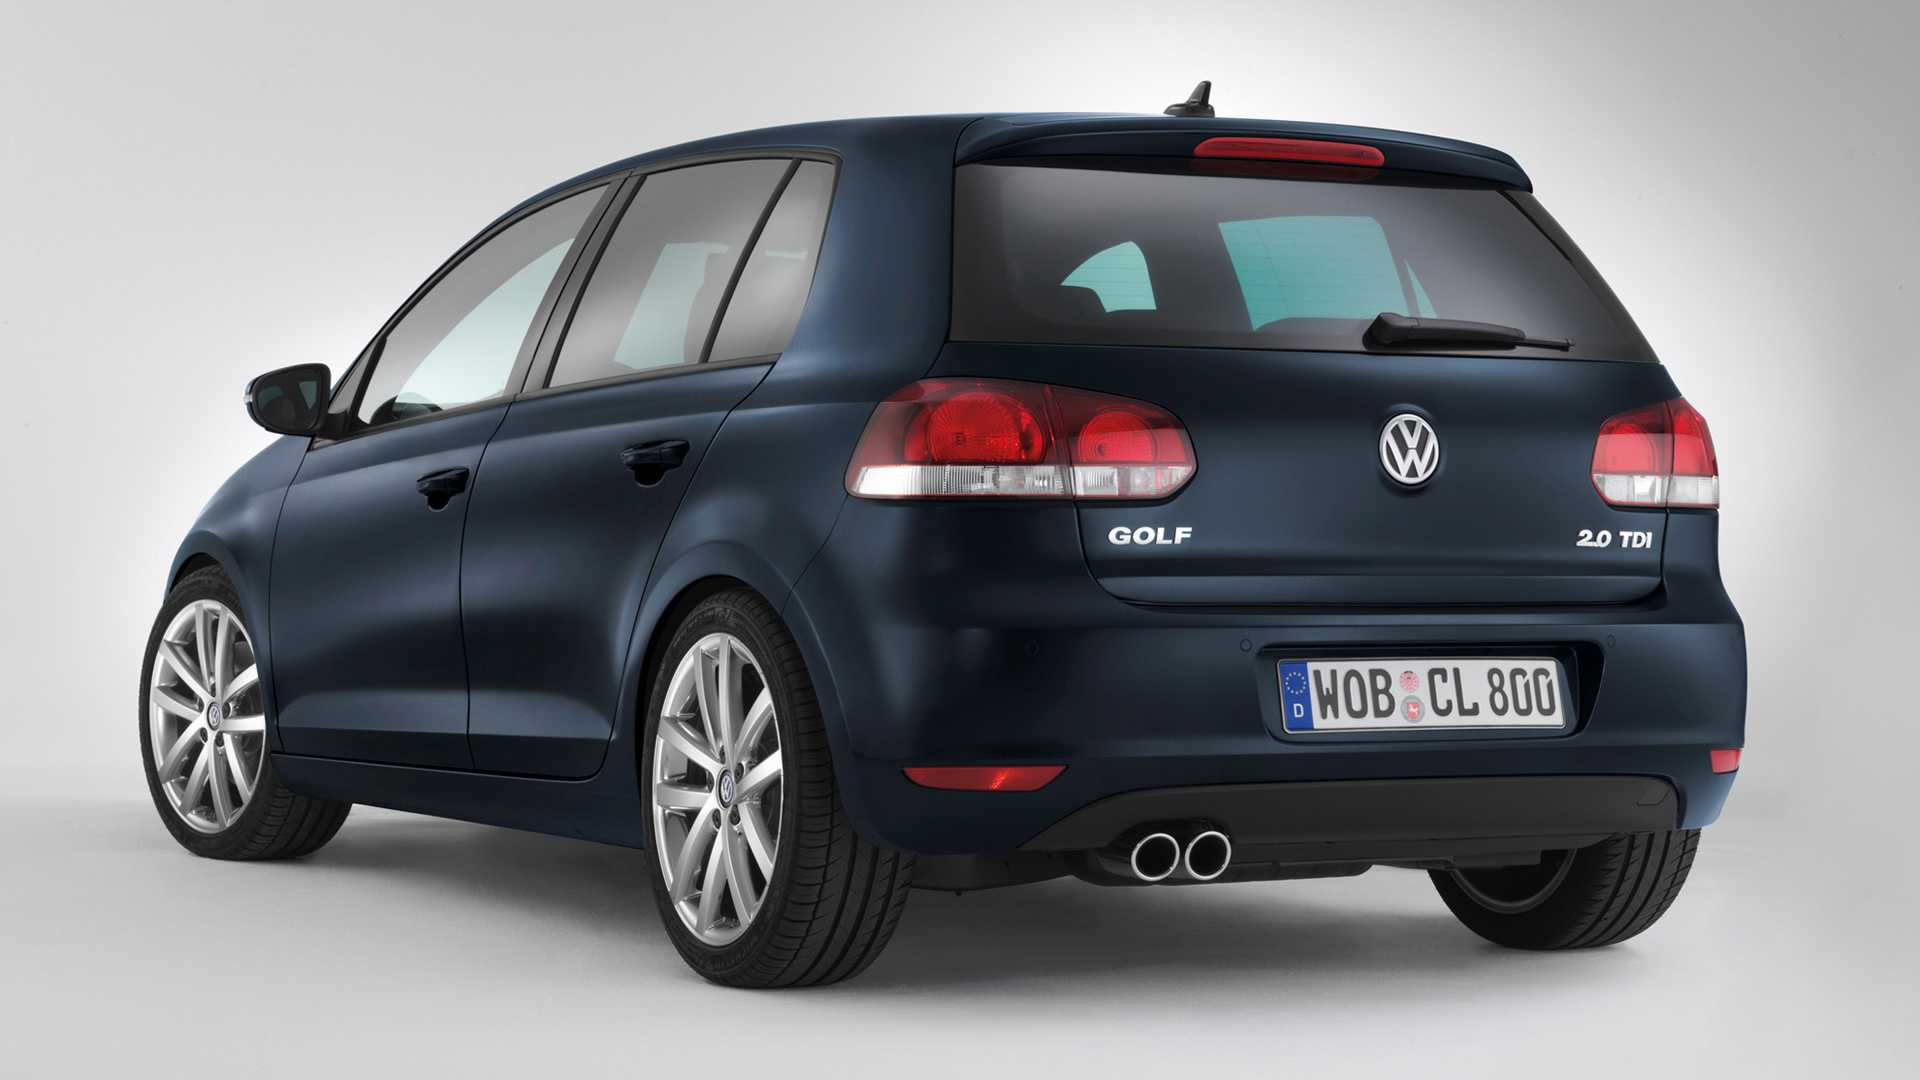 Volkswagen golf wagon (фольксваген гольф универсал) - продажа, цены, отзывы, фото: 784 объявления